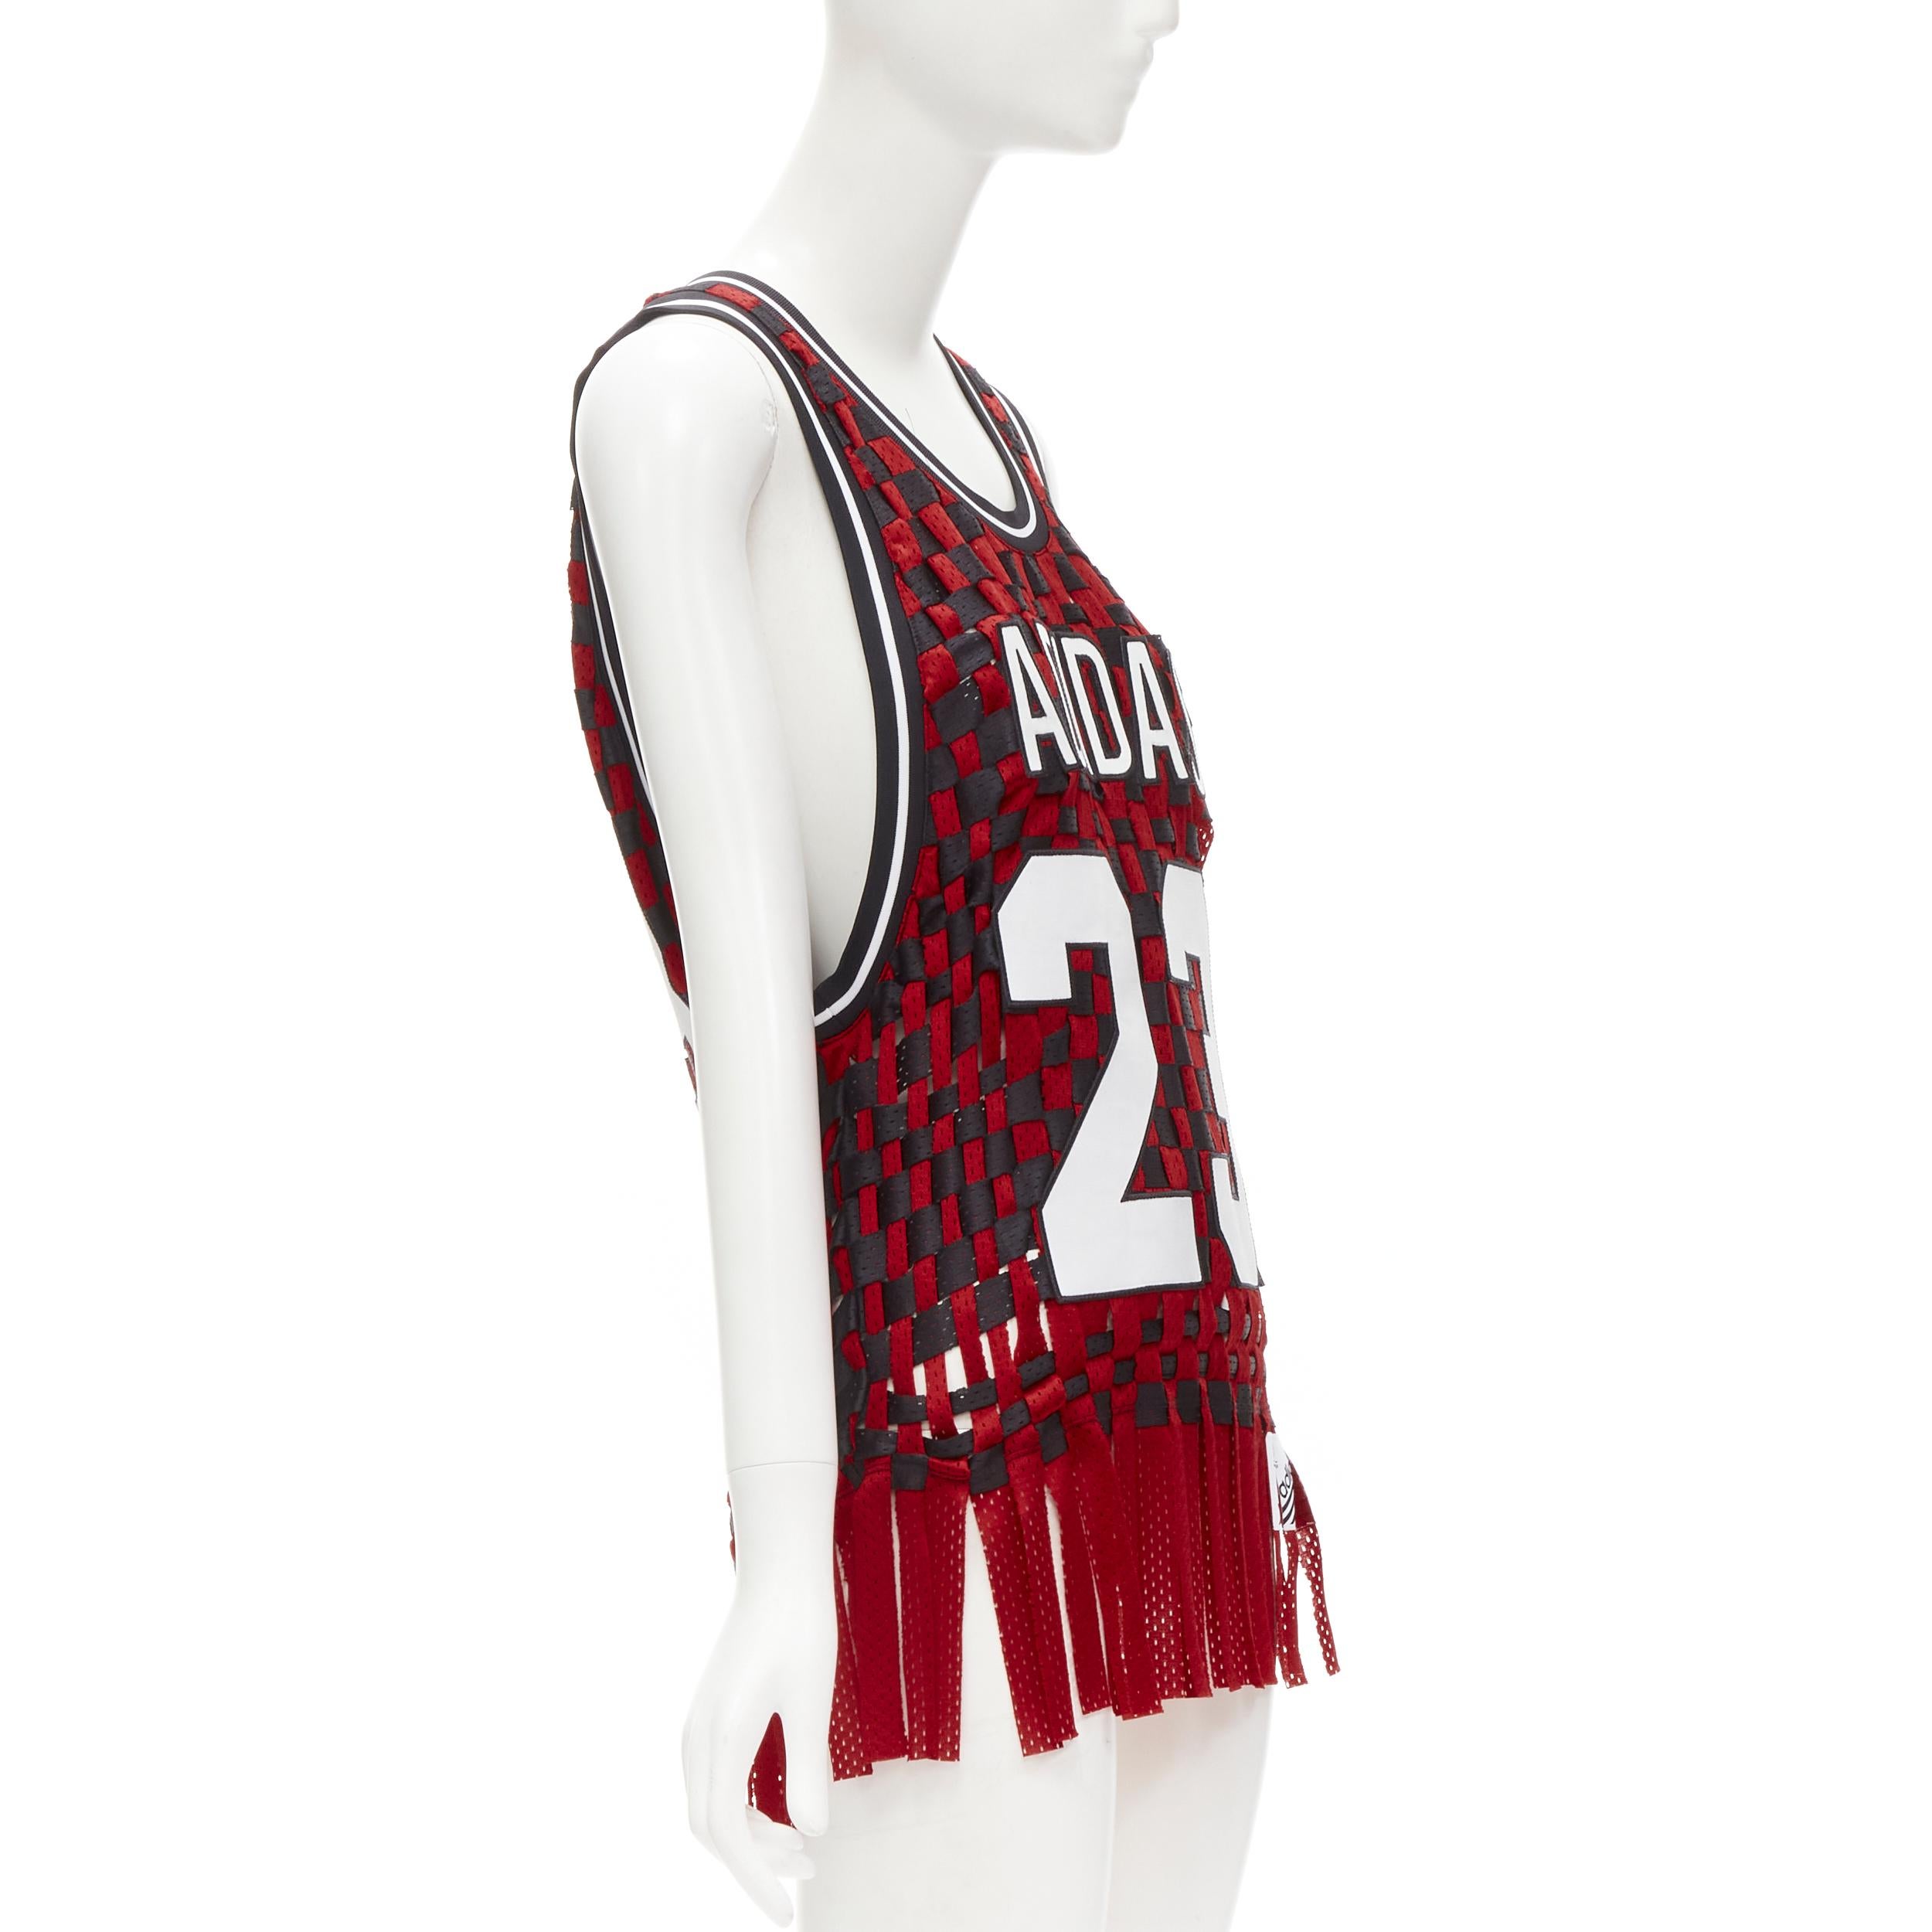 Gris JEREMY SCOTT ADIDAS 23 jersey de basket-ball noir et rouge déconstruit tissé, rare XS en vente